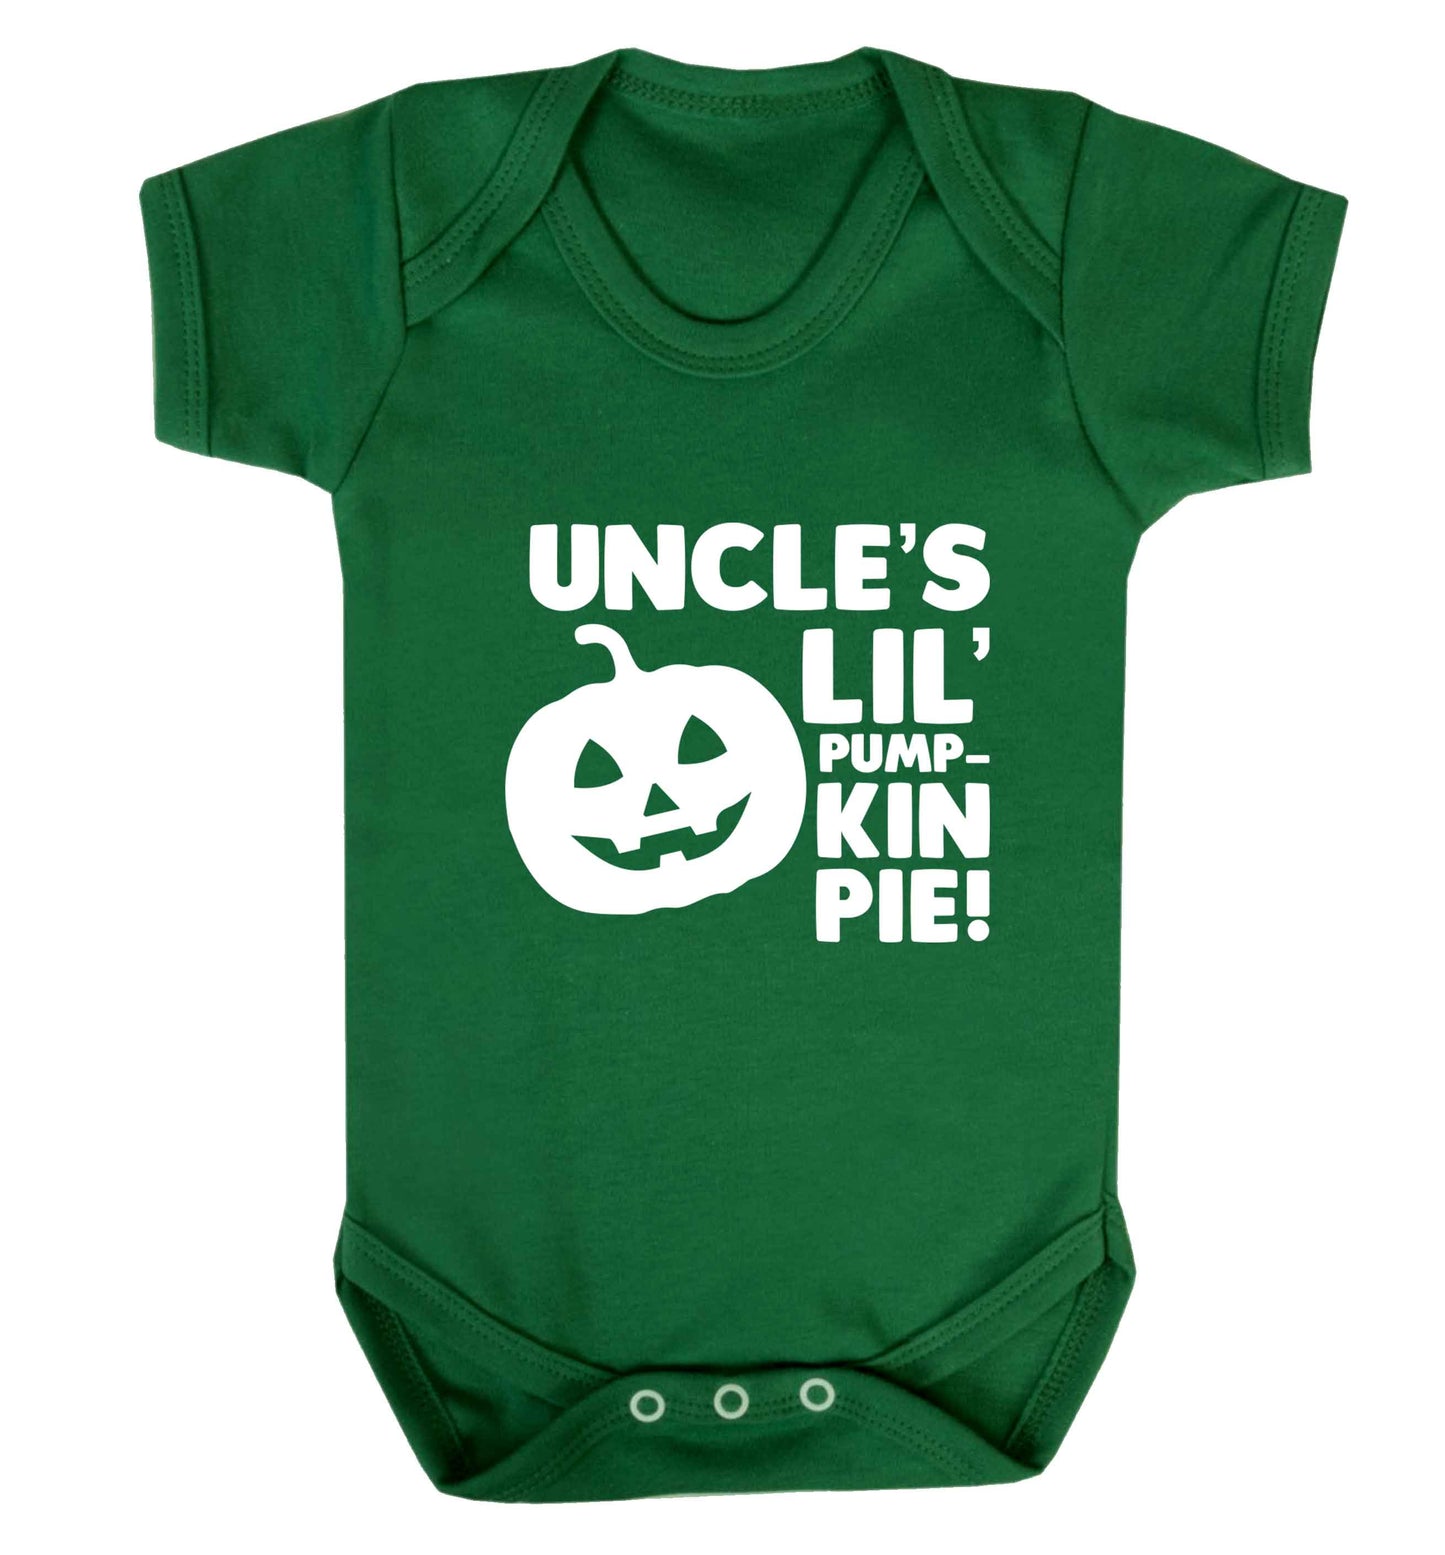 Uncle's lil' pumpkin pie baby vest green 18-24 months